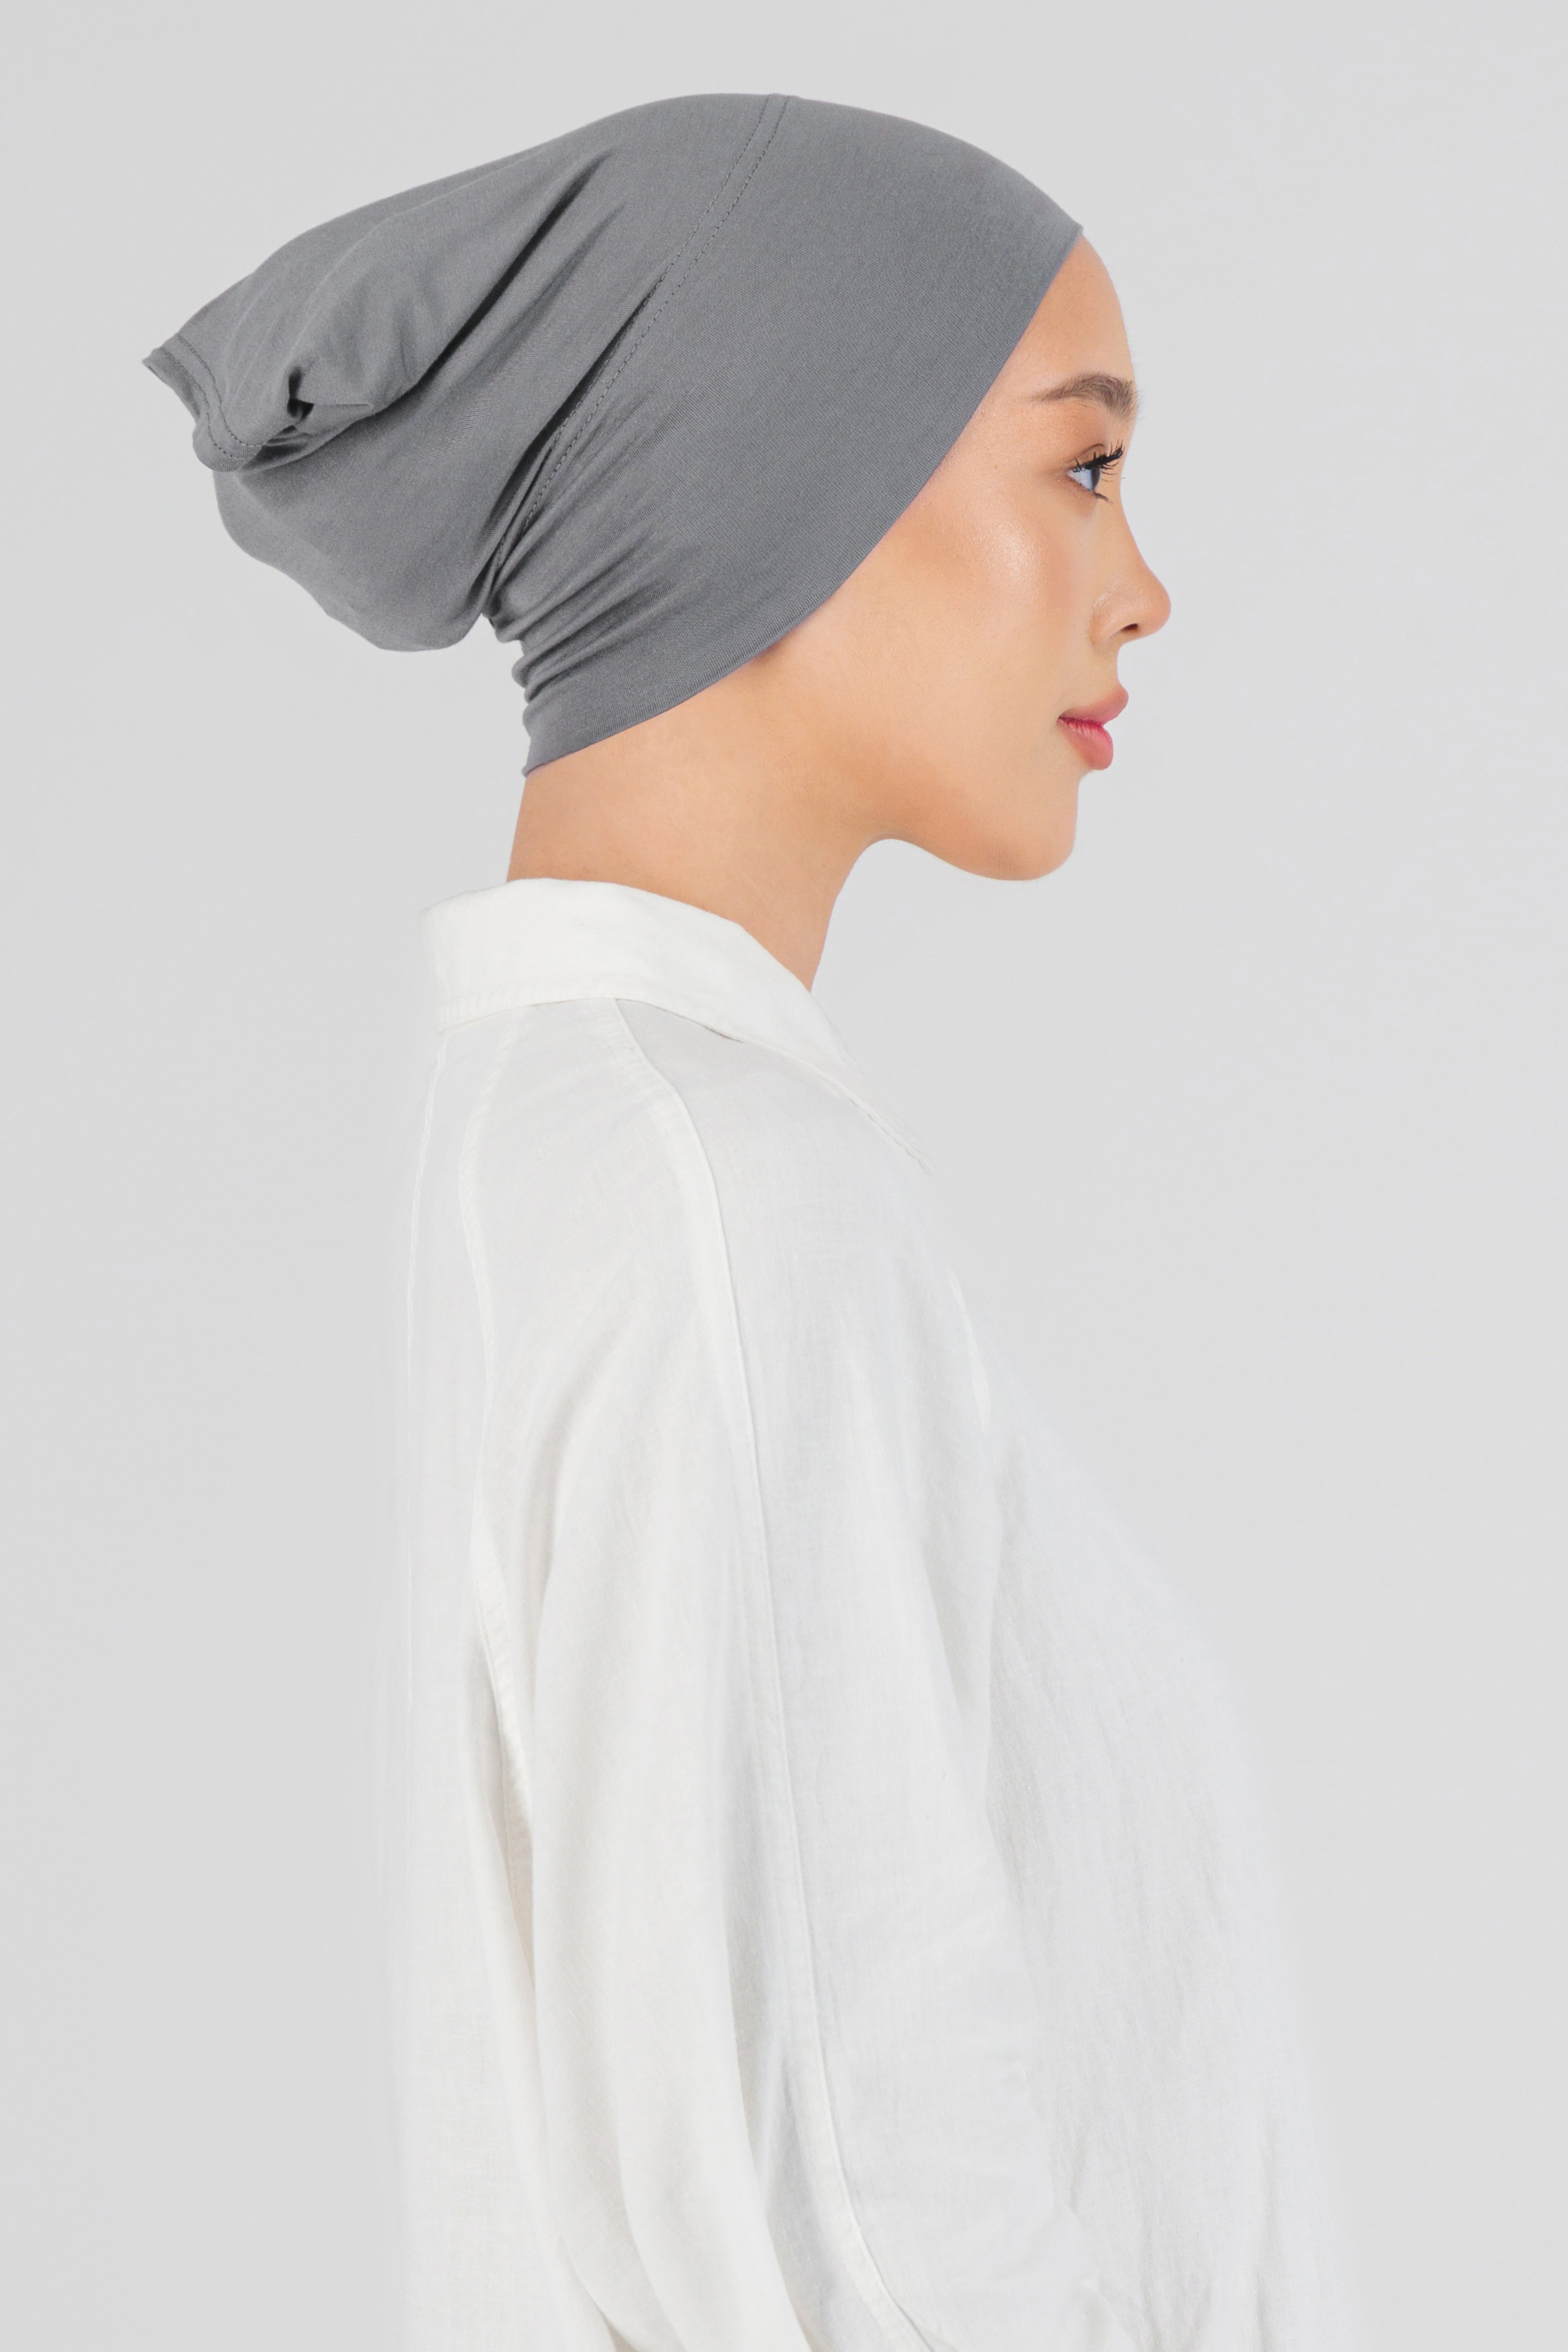 US - Matching Chiffon Hijab Set - Steel